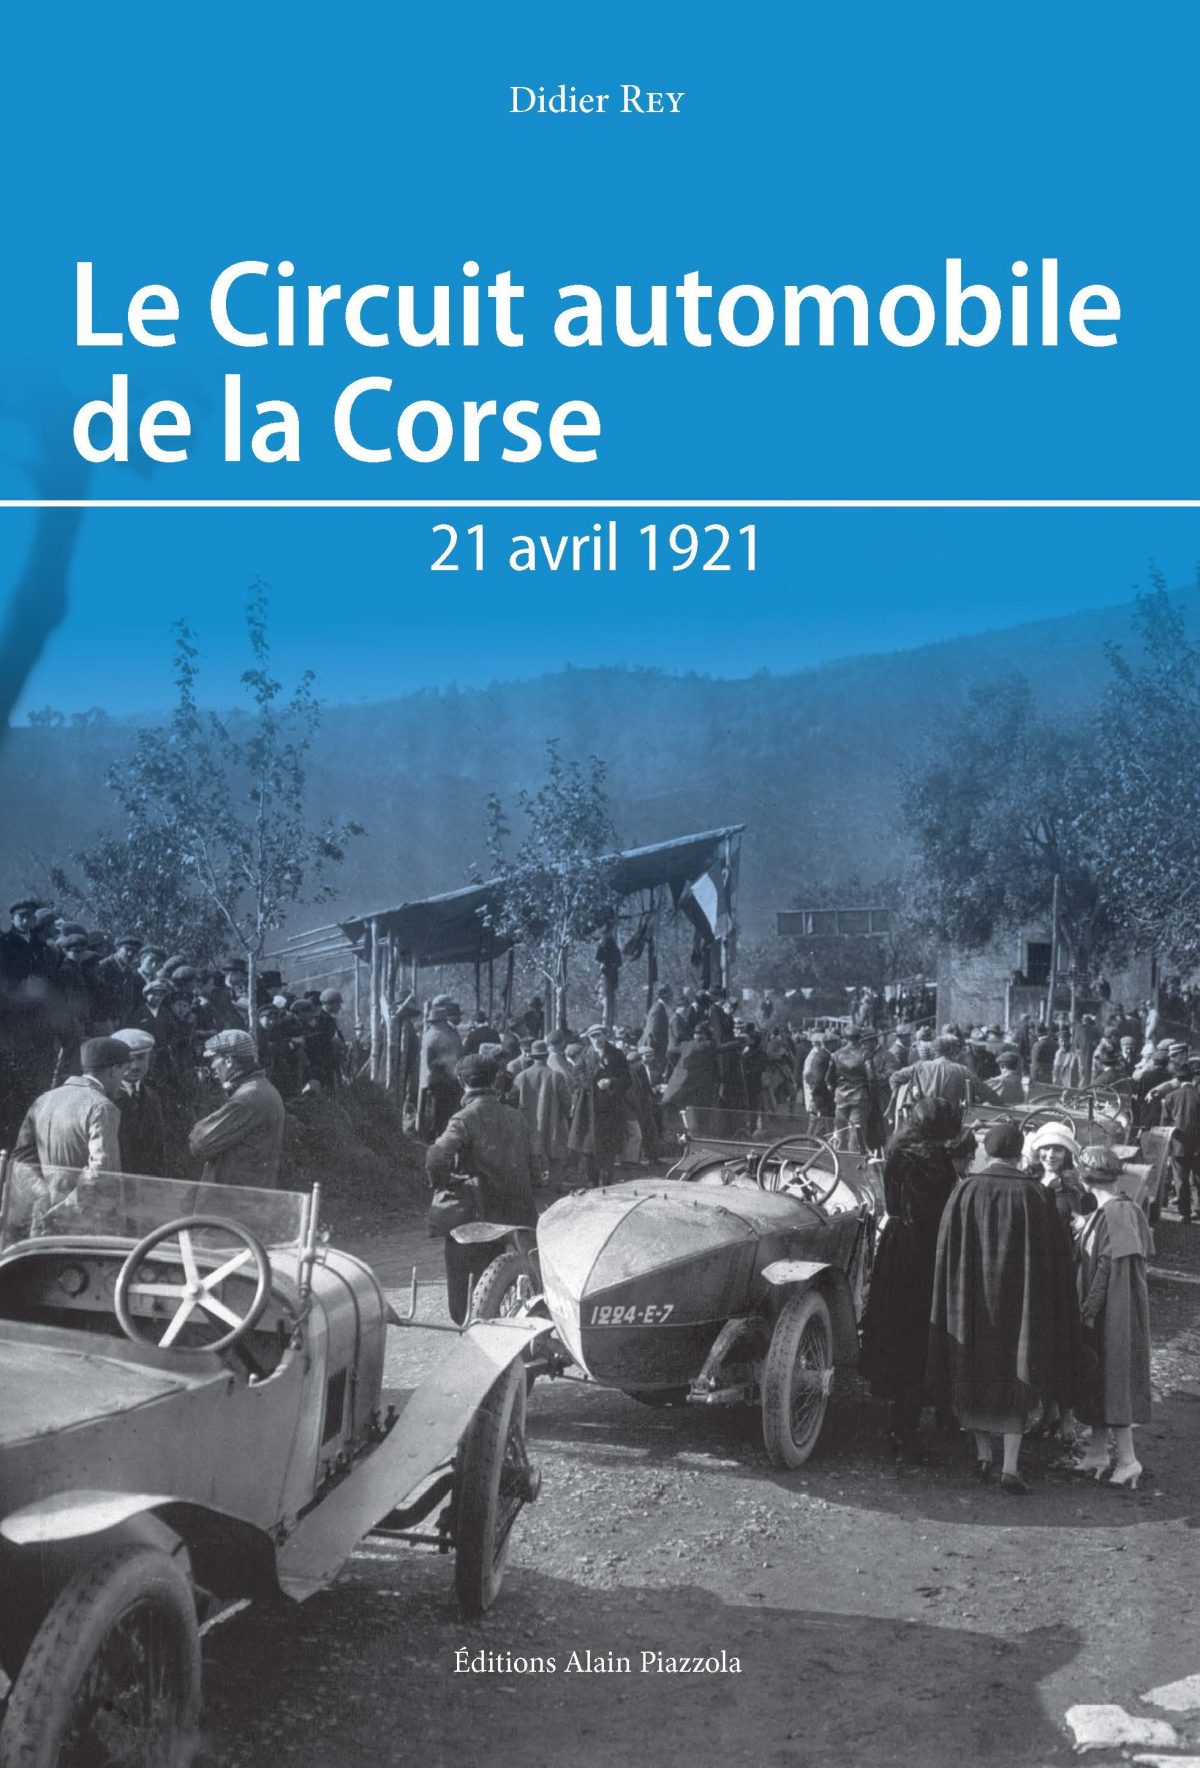 Le Circuit automobile de la Corse, 21 avril 1921, Ajaccio : Alain Piazzola, 2021.